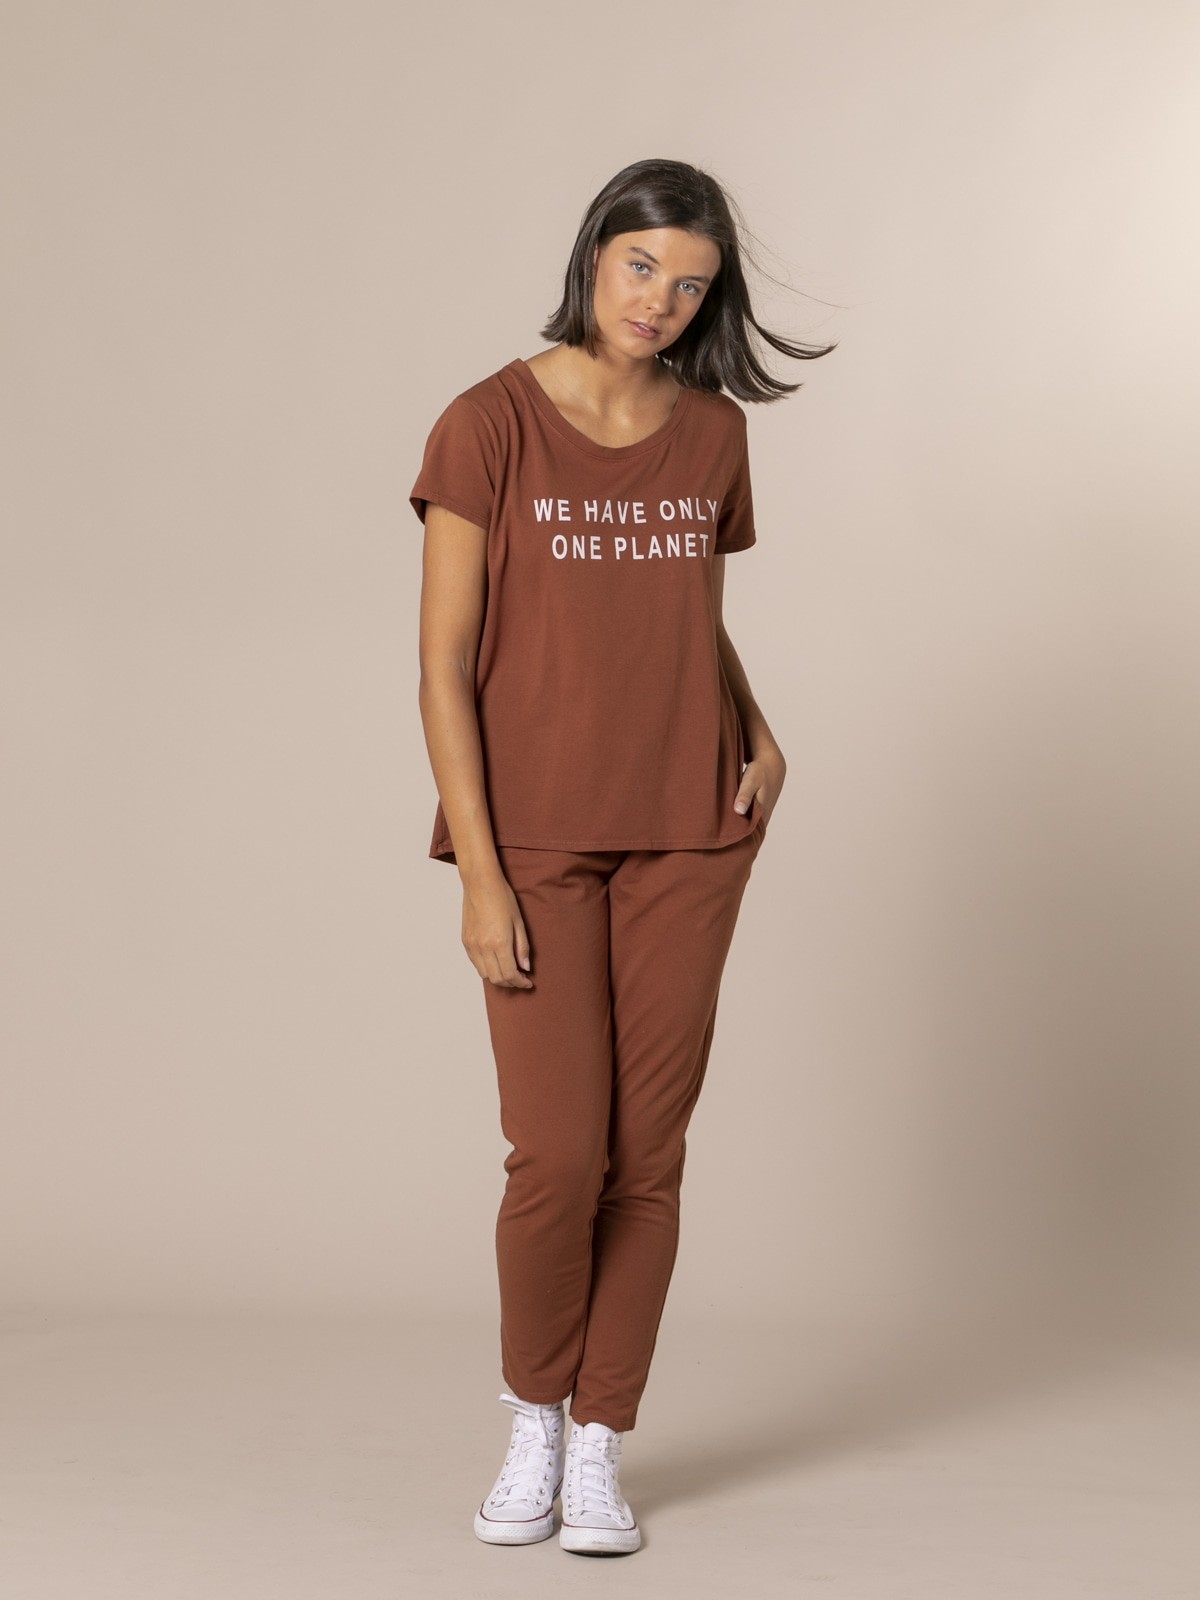 Camiseta mujer mensaje ecofriendly Teja